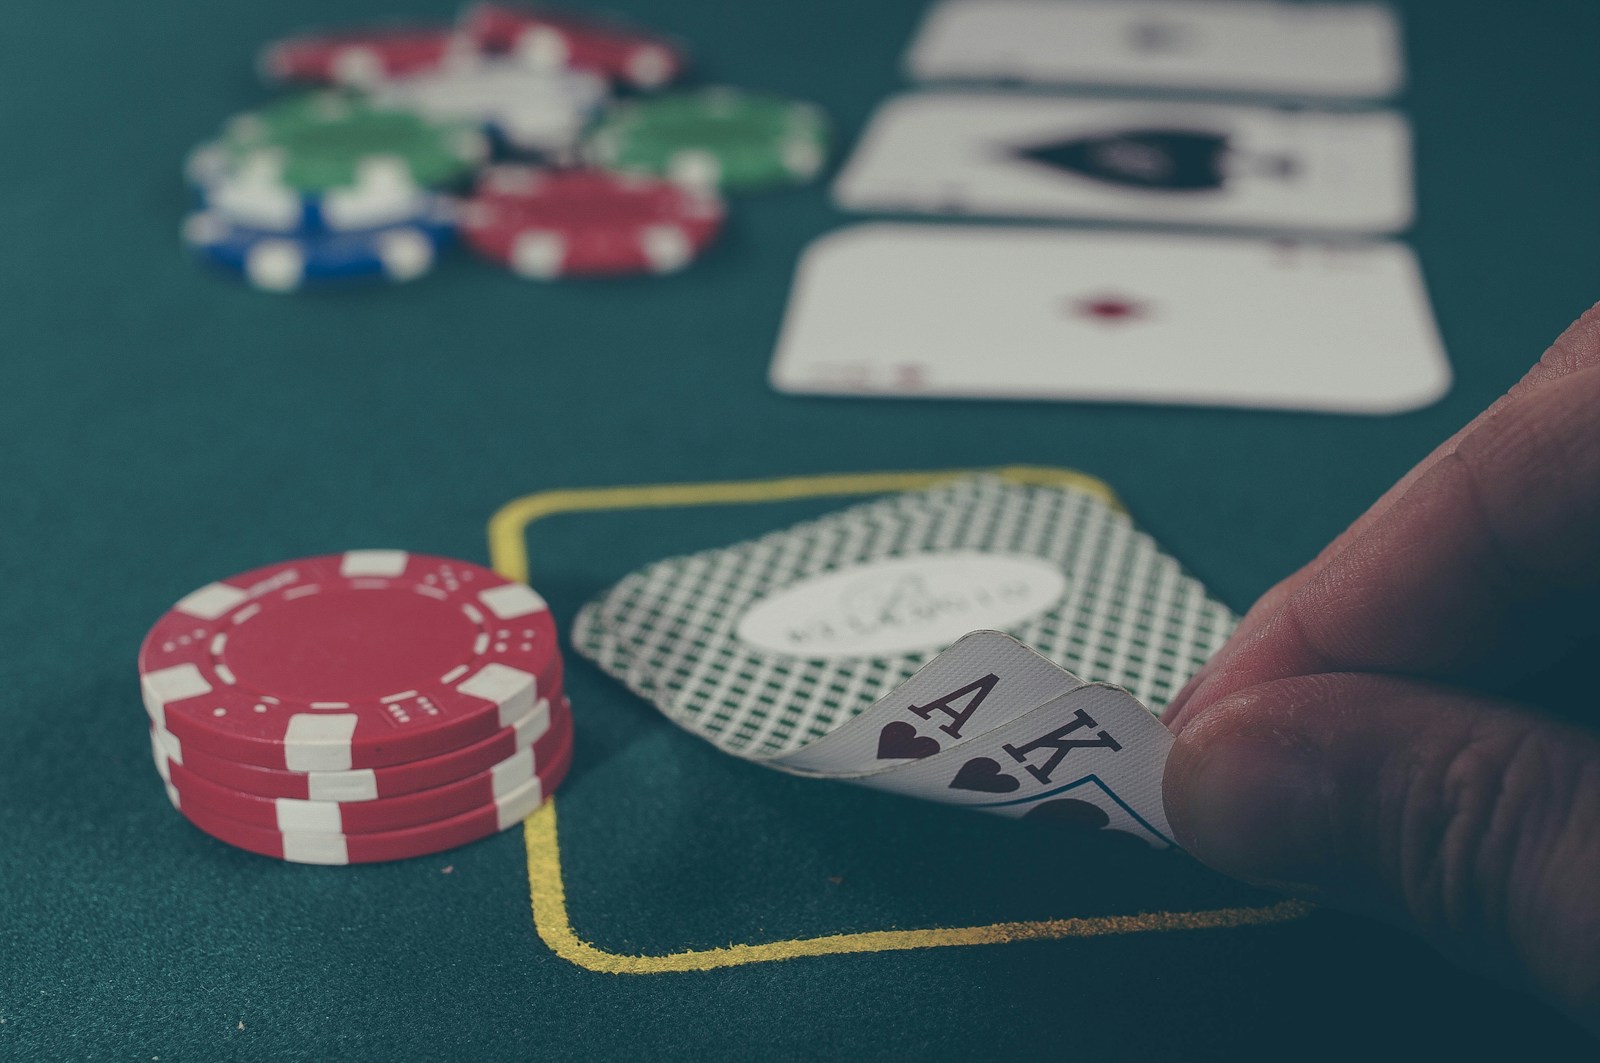 Live dealer spil er populære, også online casino spil, hvor casinoer som 888casino, LeoVegas og mange andre tilbyder live dealer spil døgnet rundt